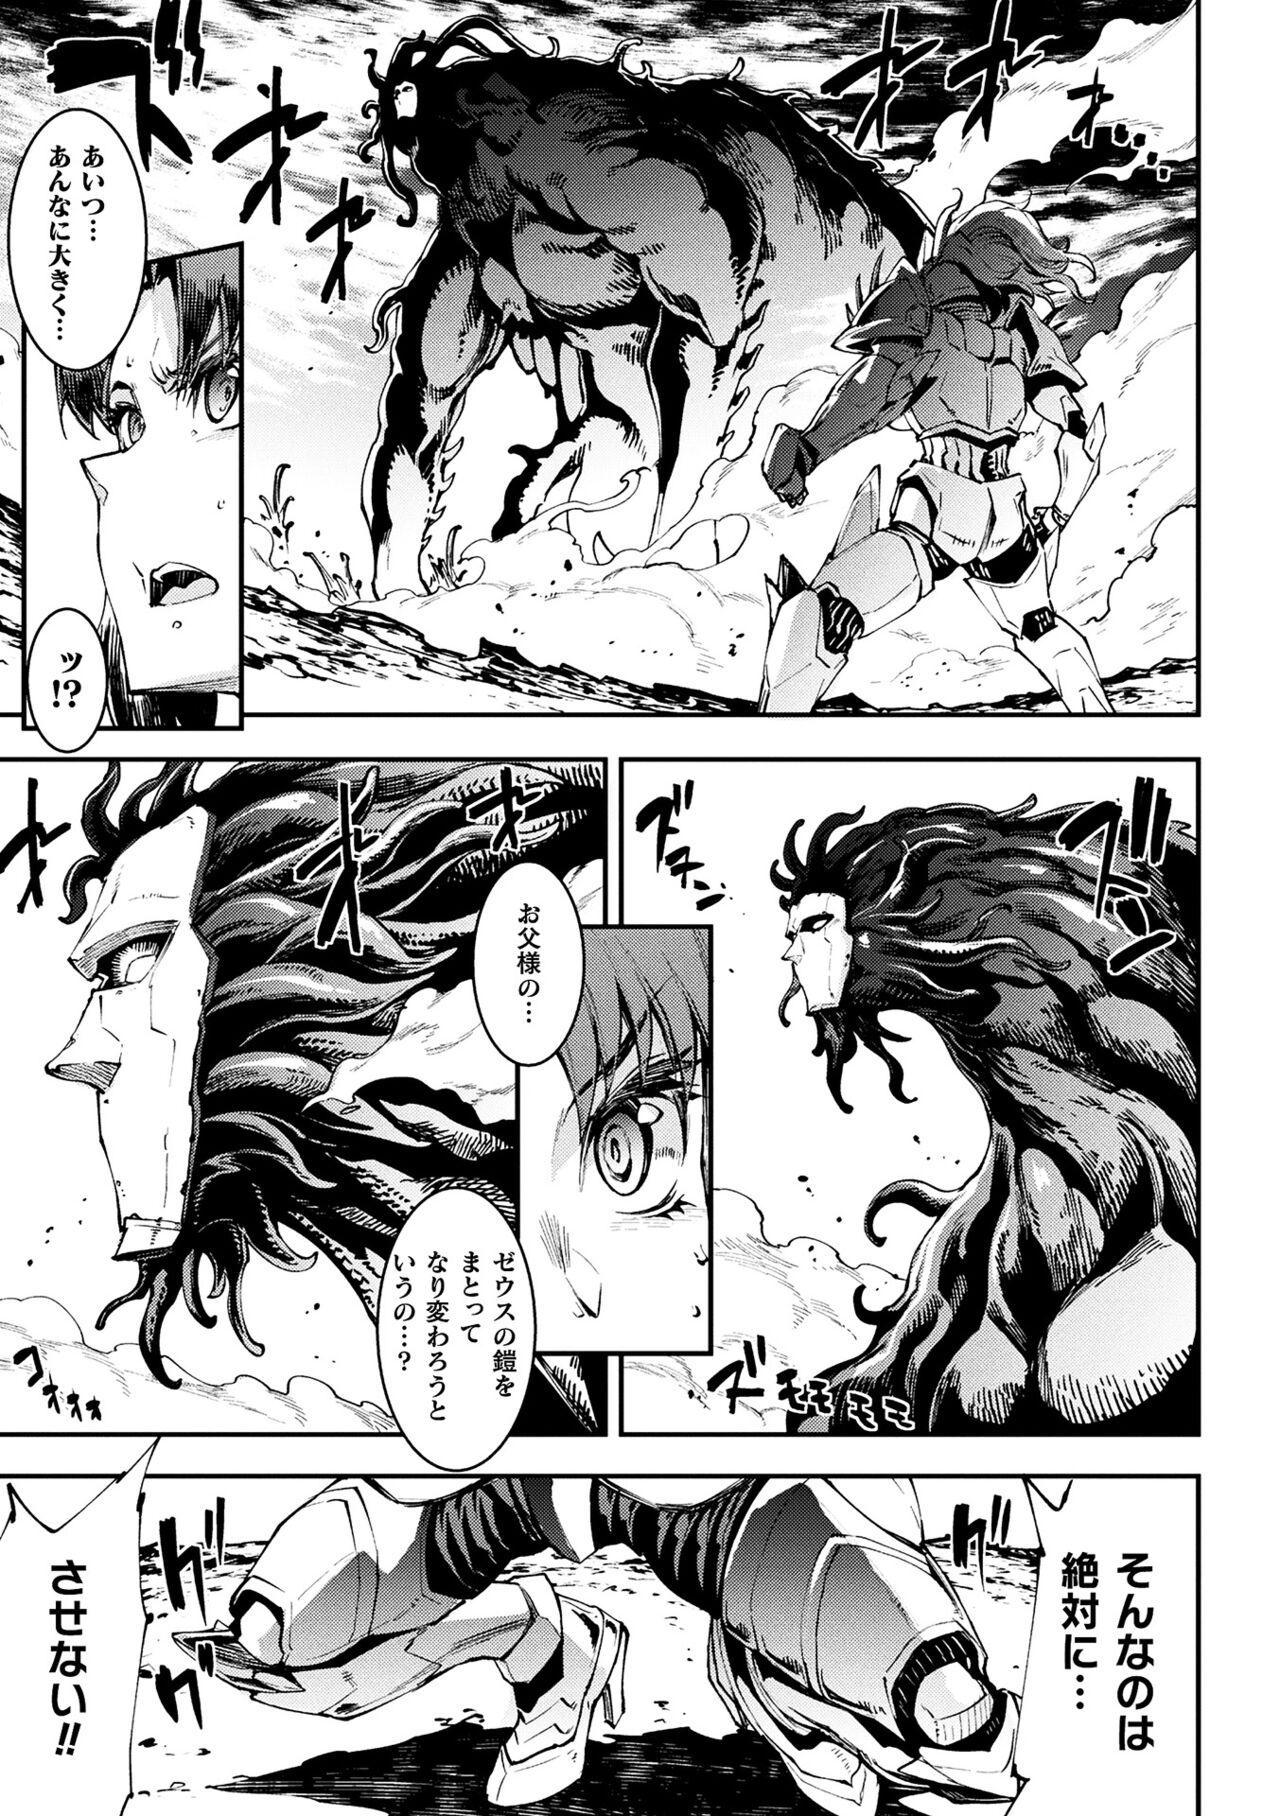 [Erect Sawaru] Raikou Shinki Igis Magia III -PANDRA saga 3rd ignition- 4 [Digital] 126